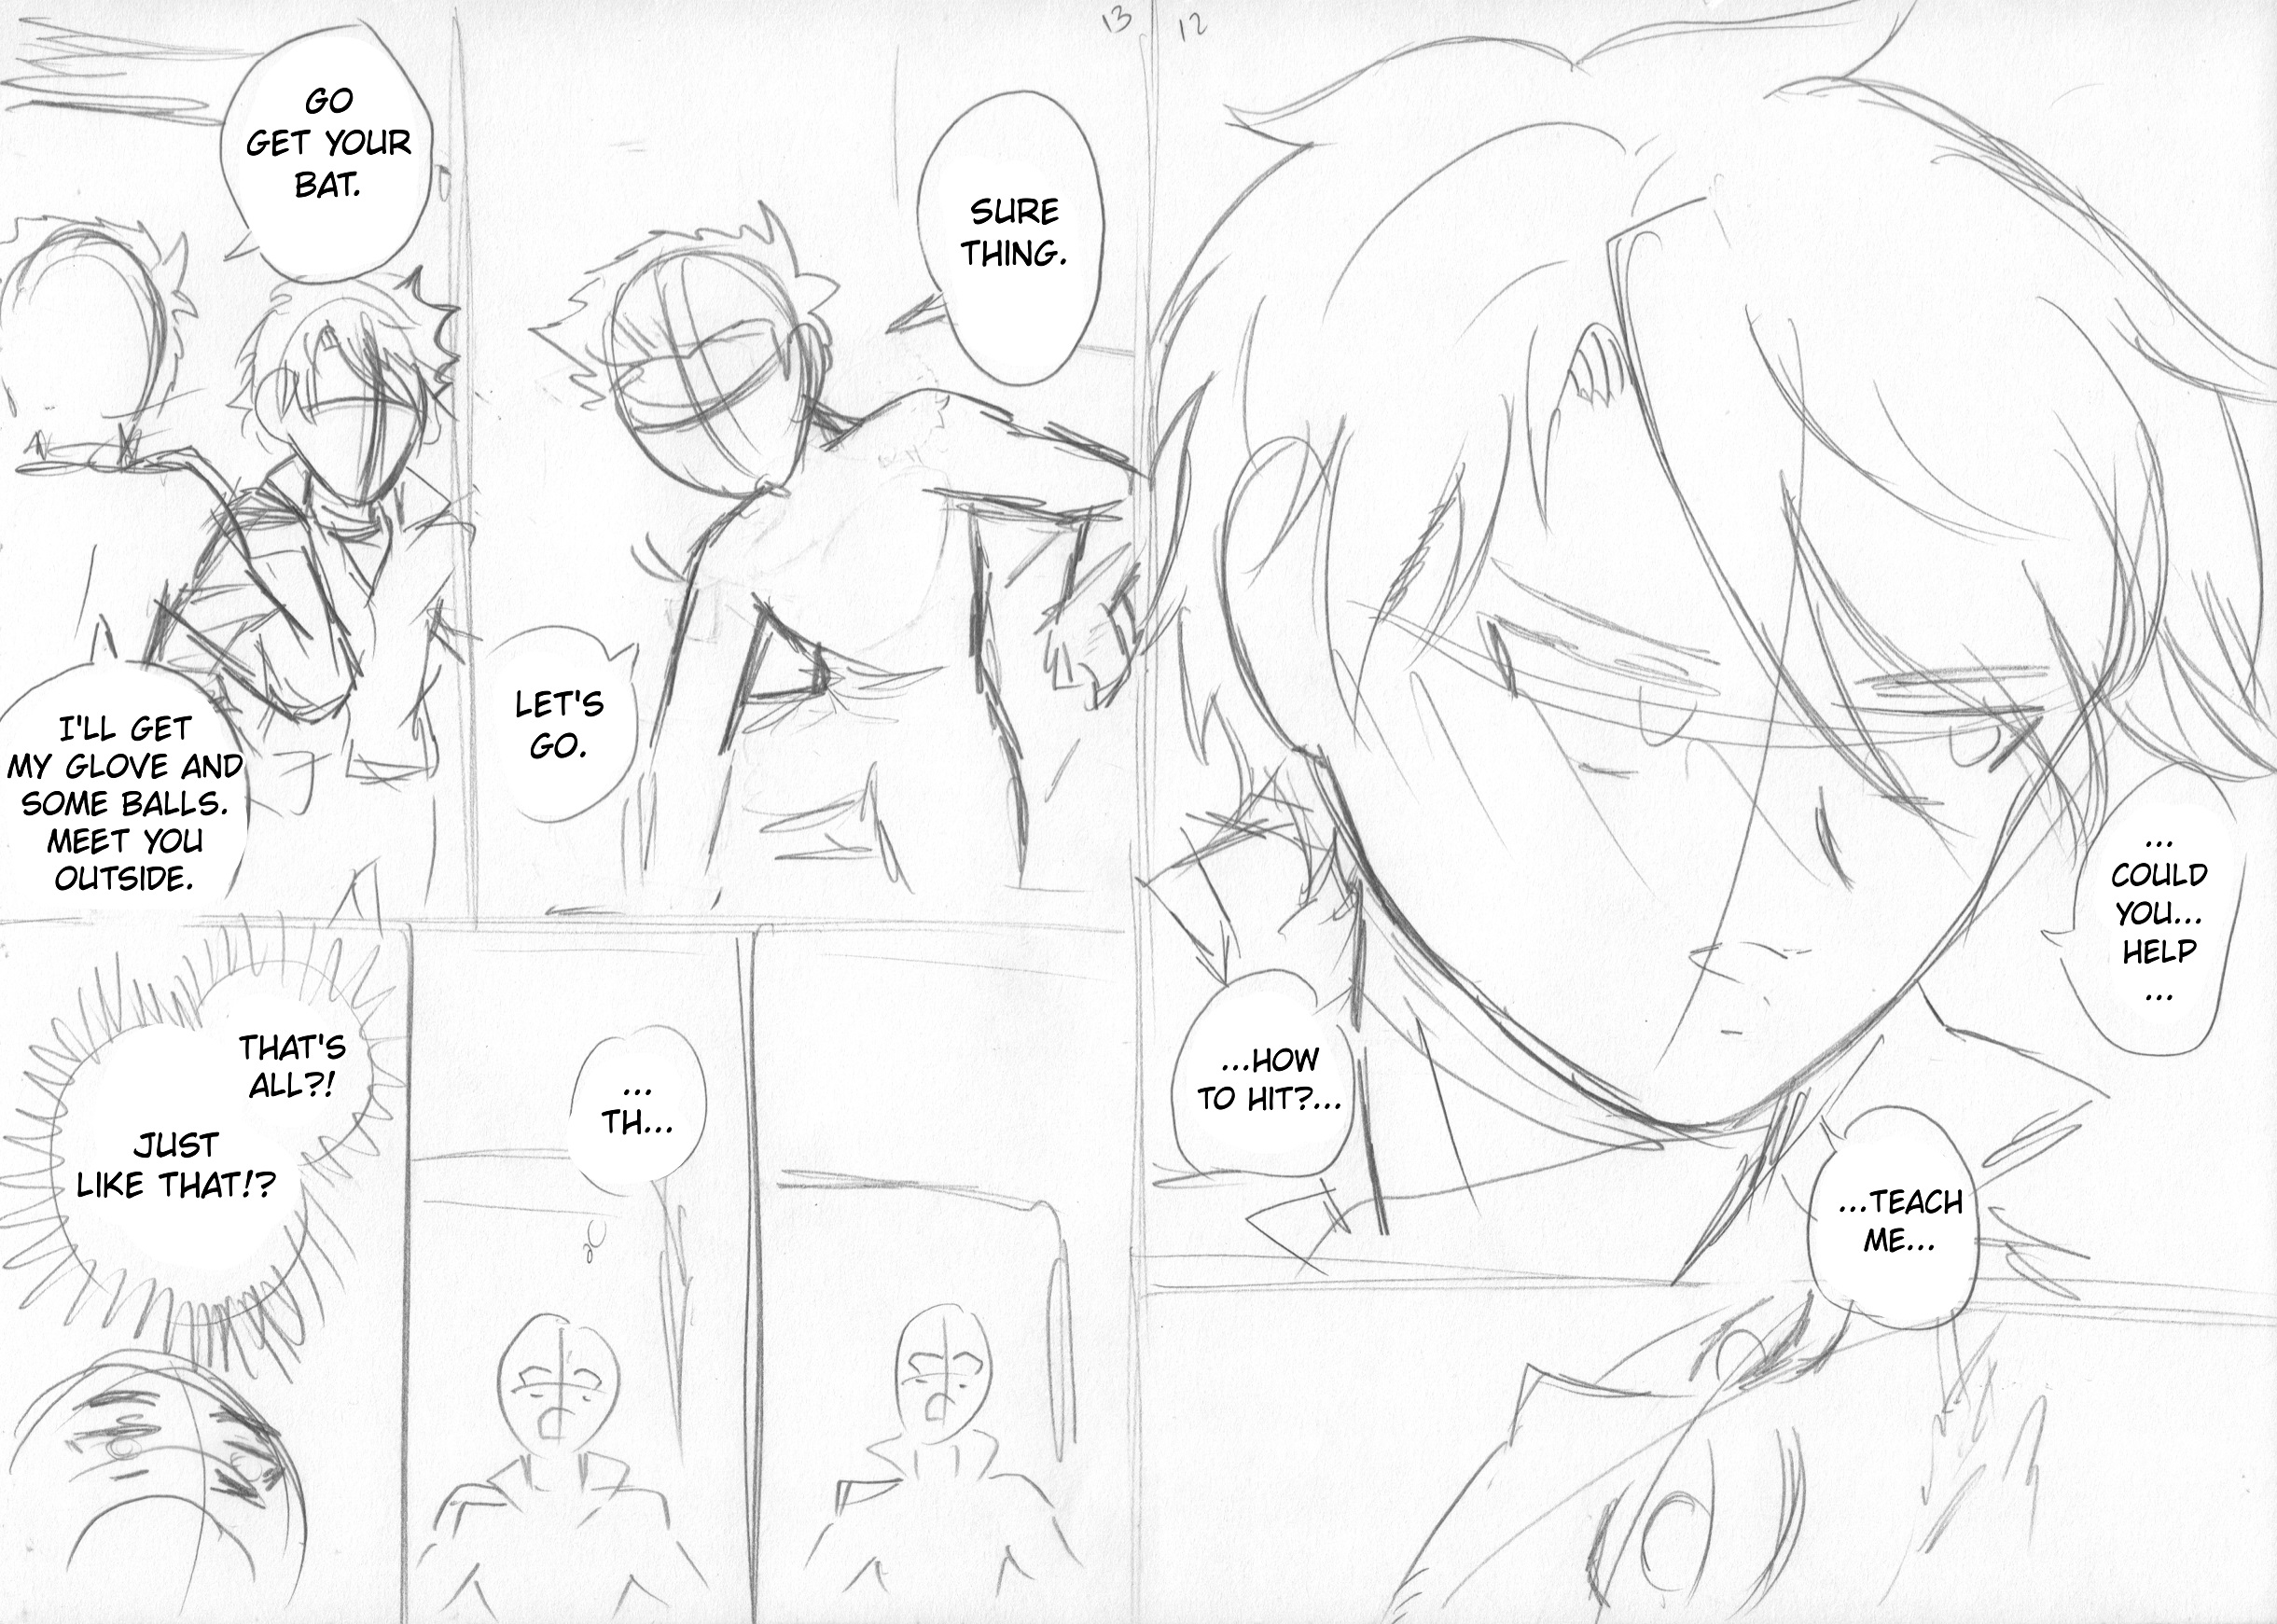 At-Bat' - Baseball Manga Storyboard (Pages 12-13) by LordGuyis on DeviantArt